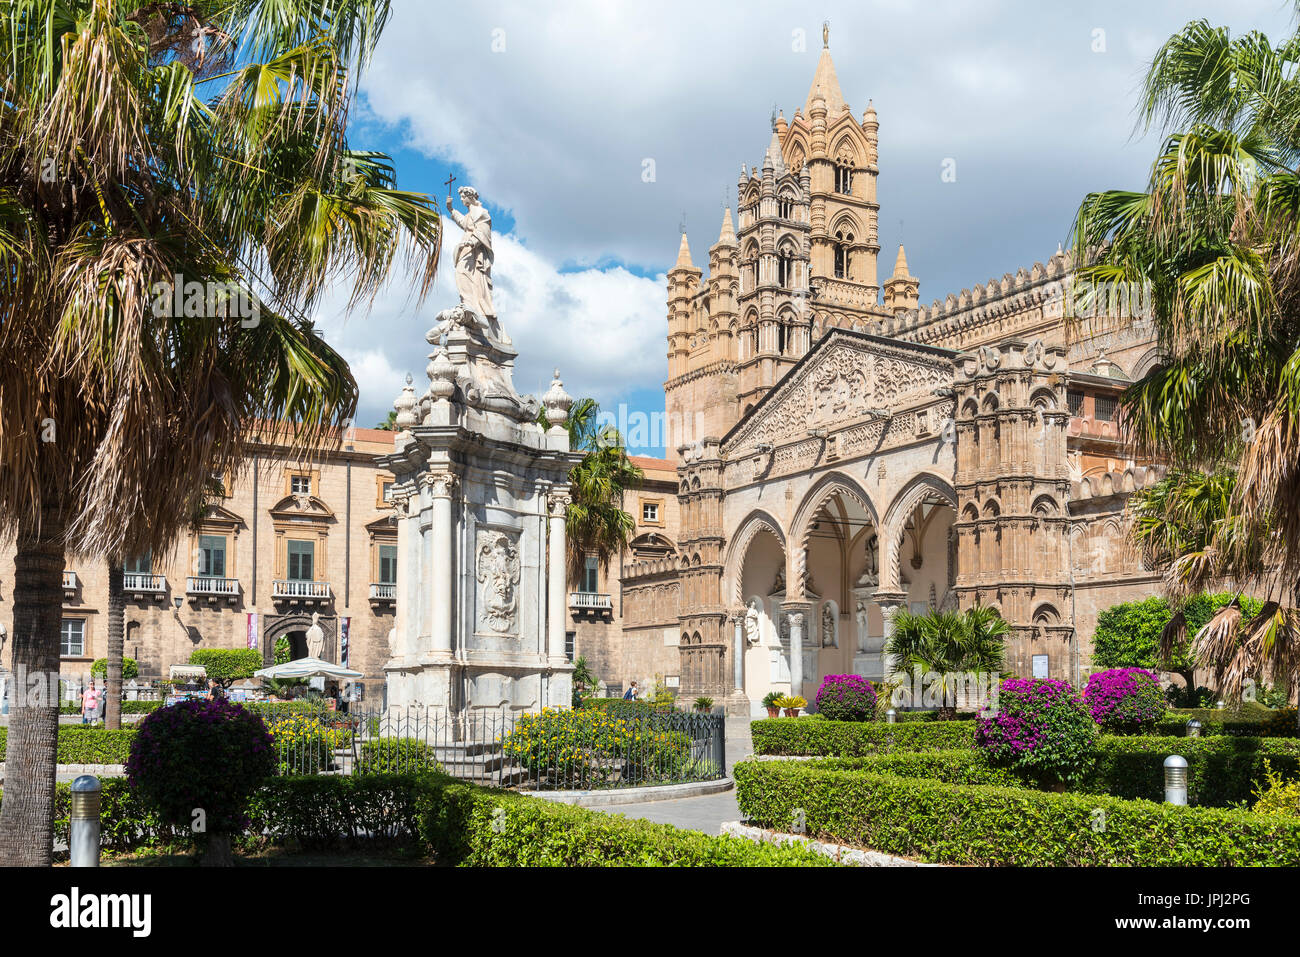 In der Piazza Cattedrale mit Blick auf die gotische Laubengang und Haupteingang der Kathedrale in Zentral-Palermo, Sizilien, Italien. Stockfoto